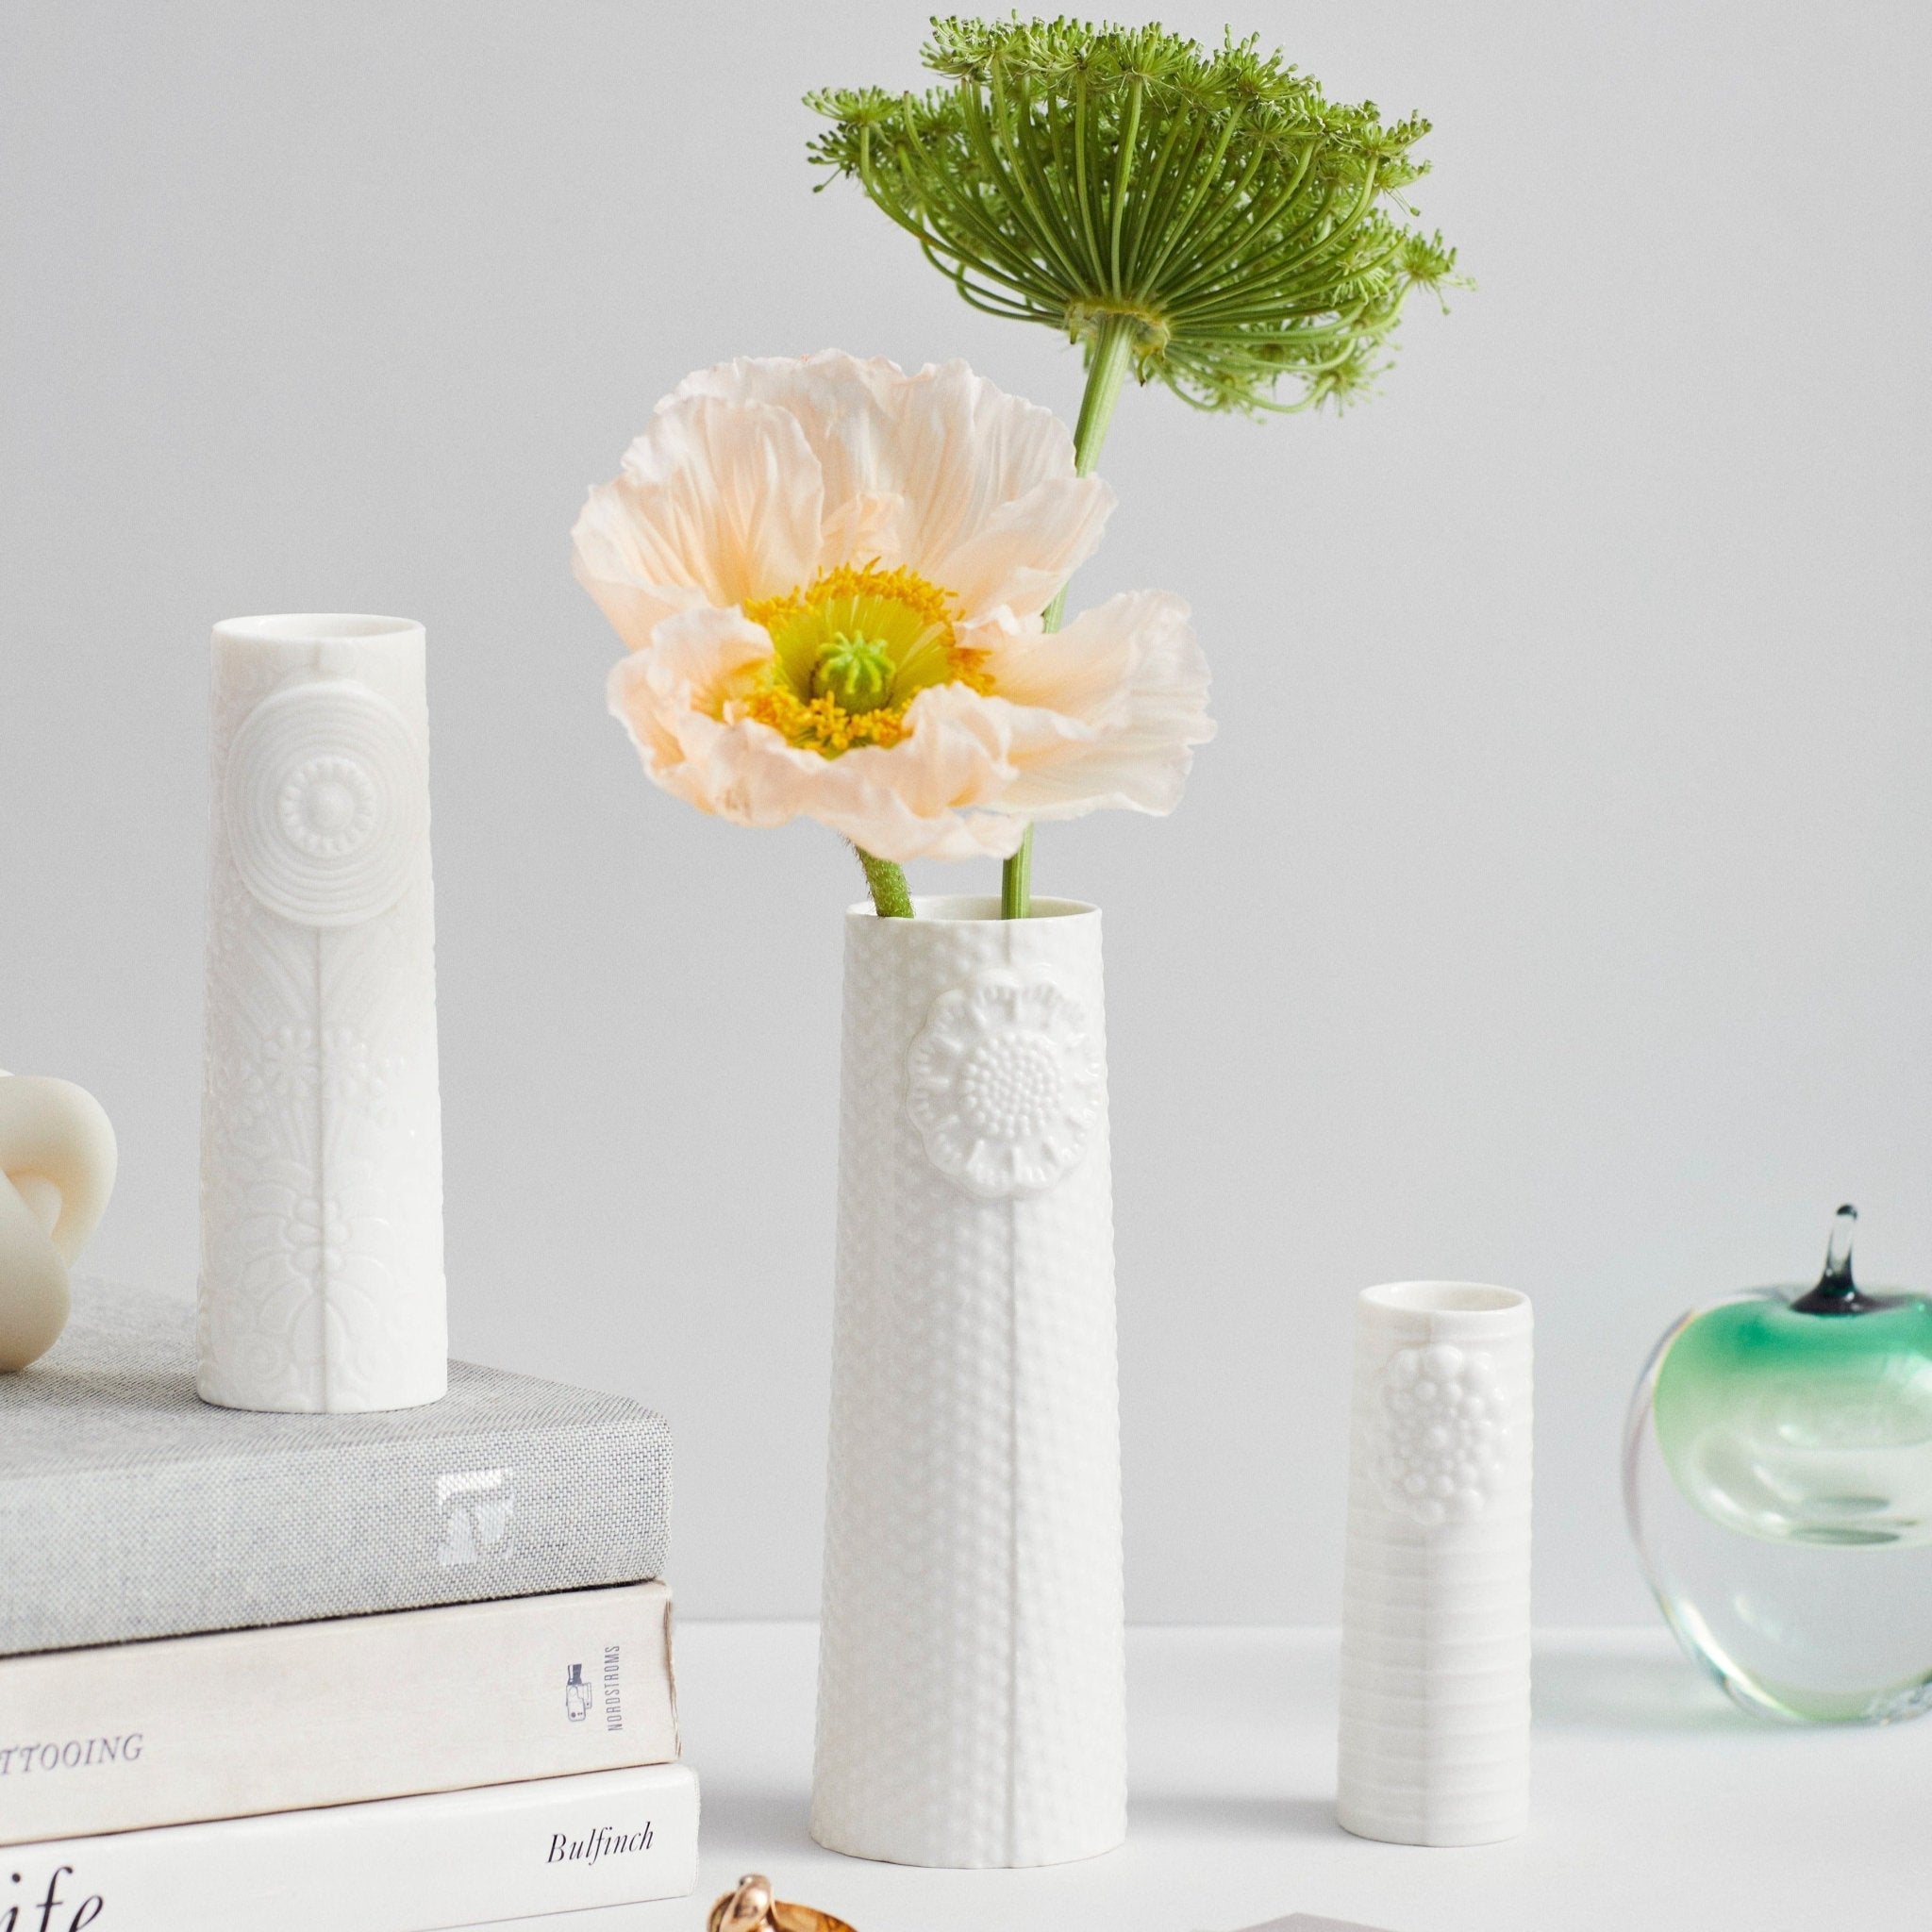 Pipanella lines Micro White Vase - Life of Riley